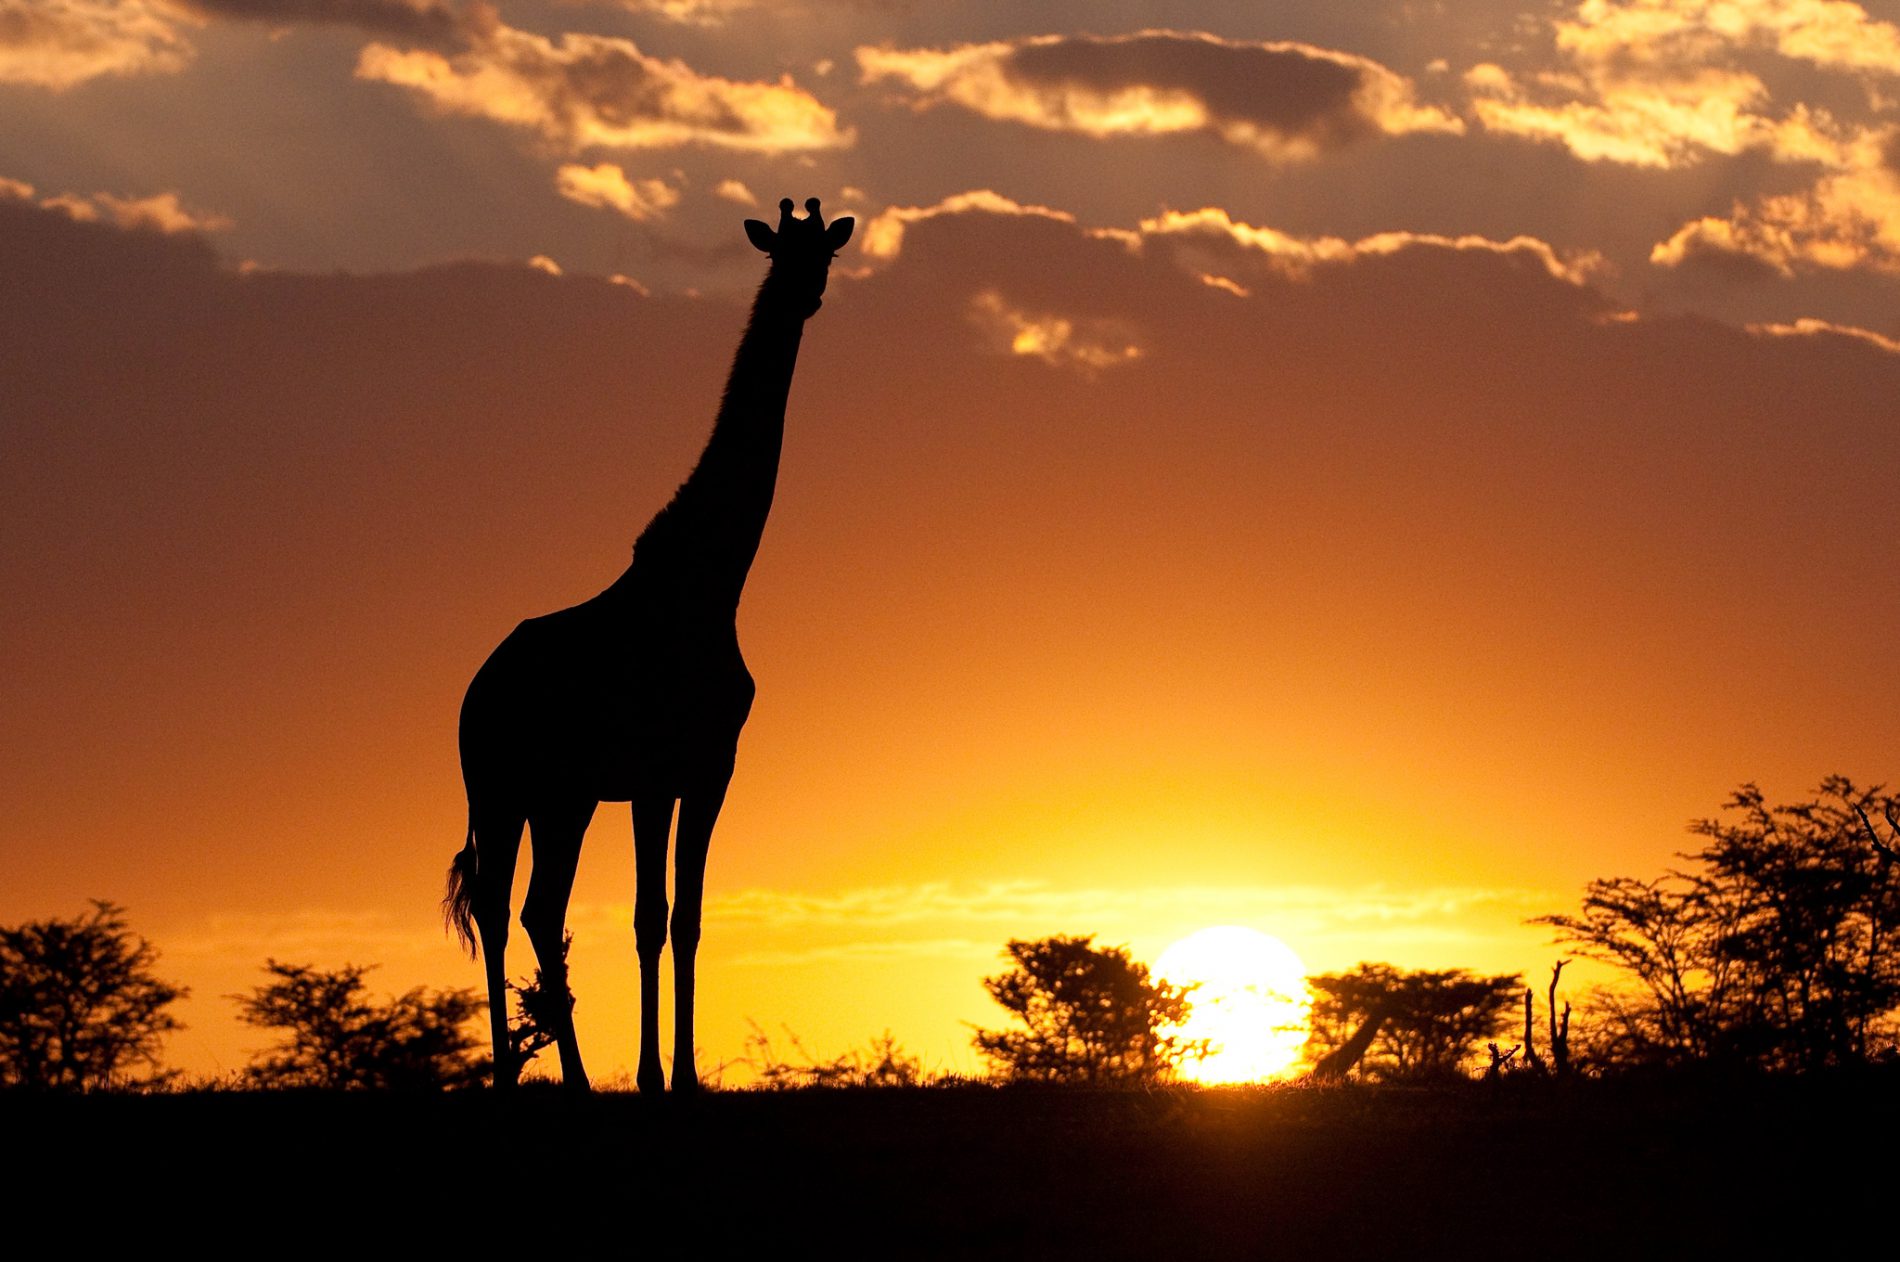 Giraffe silhouette in Africa